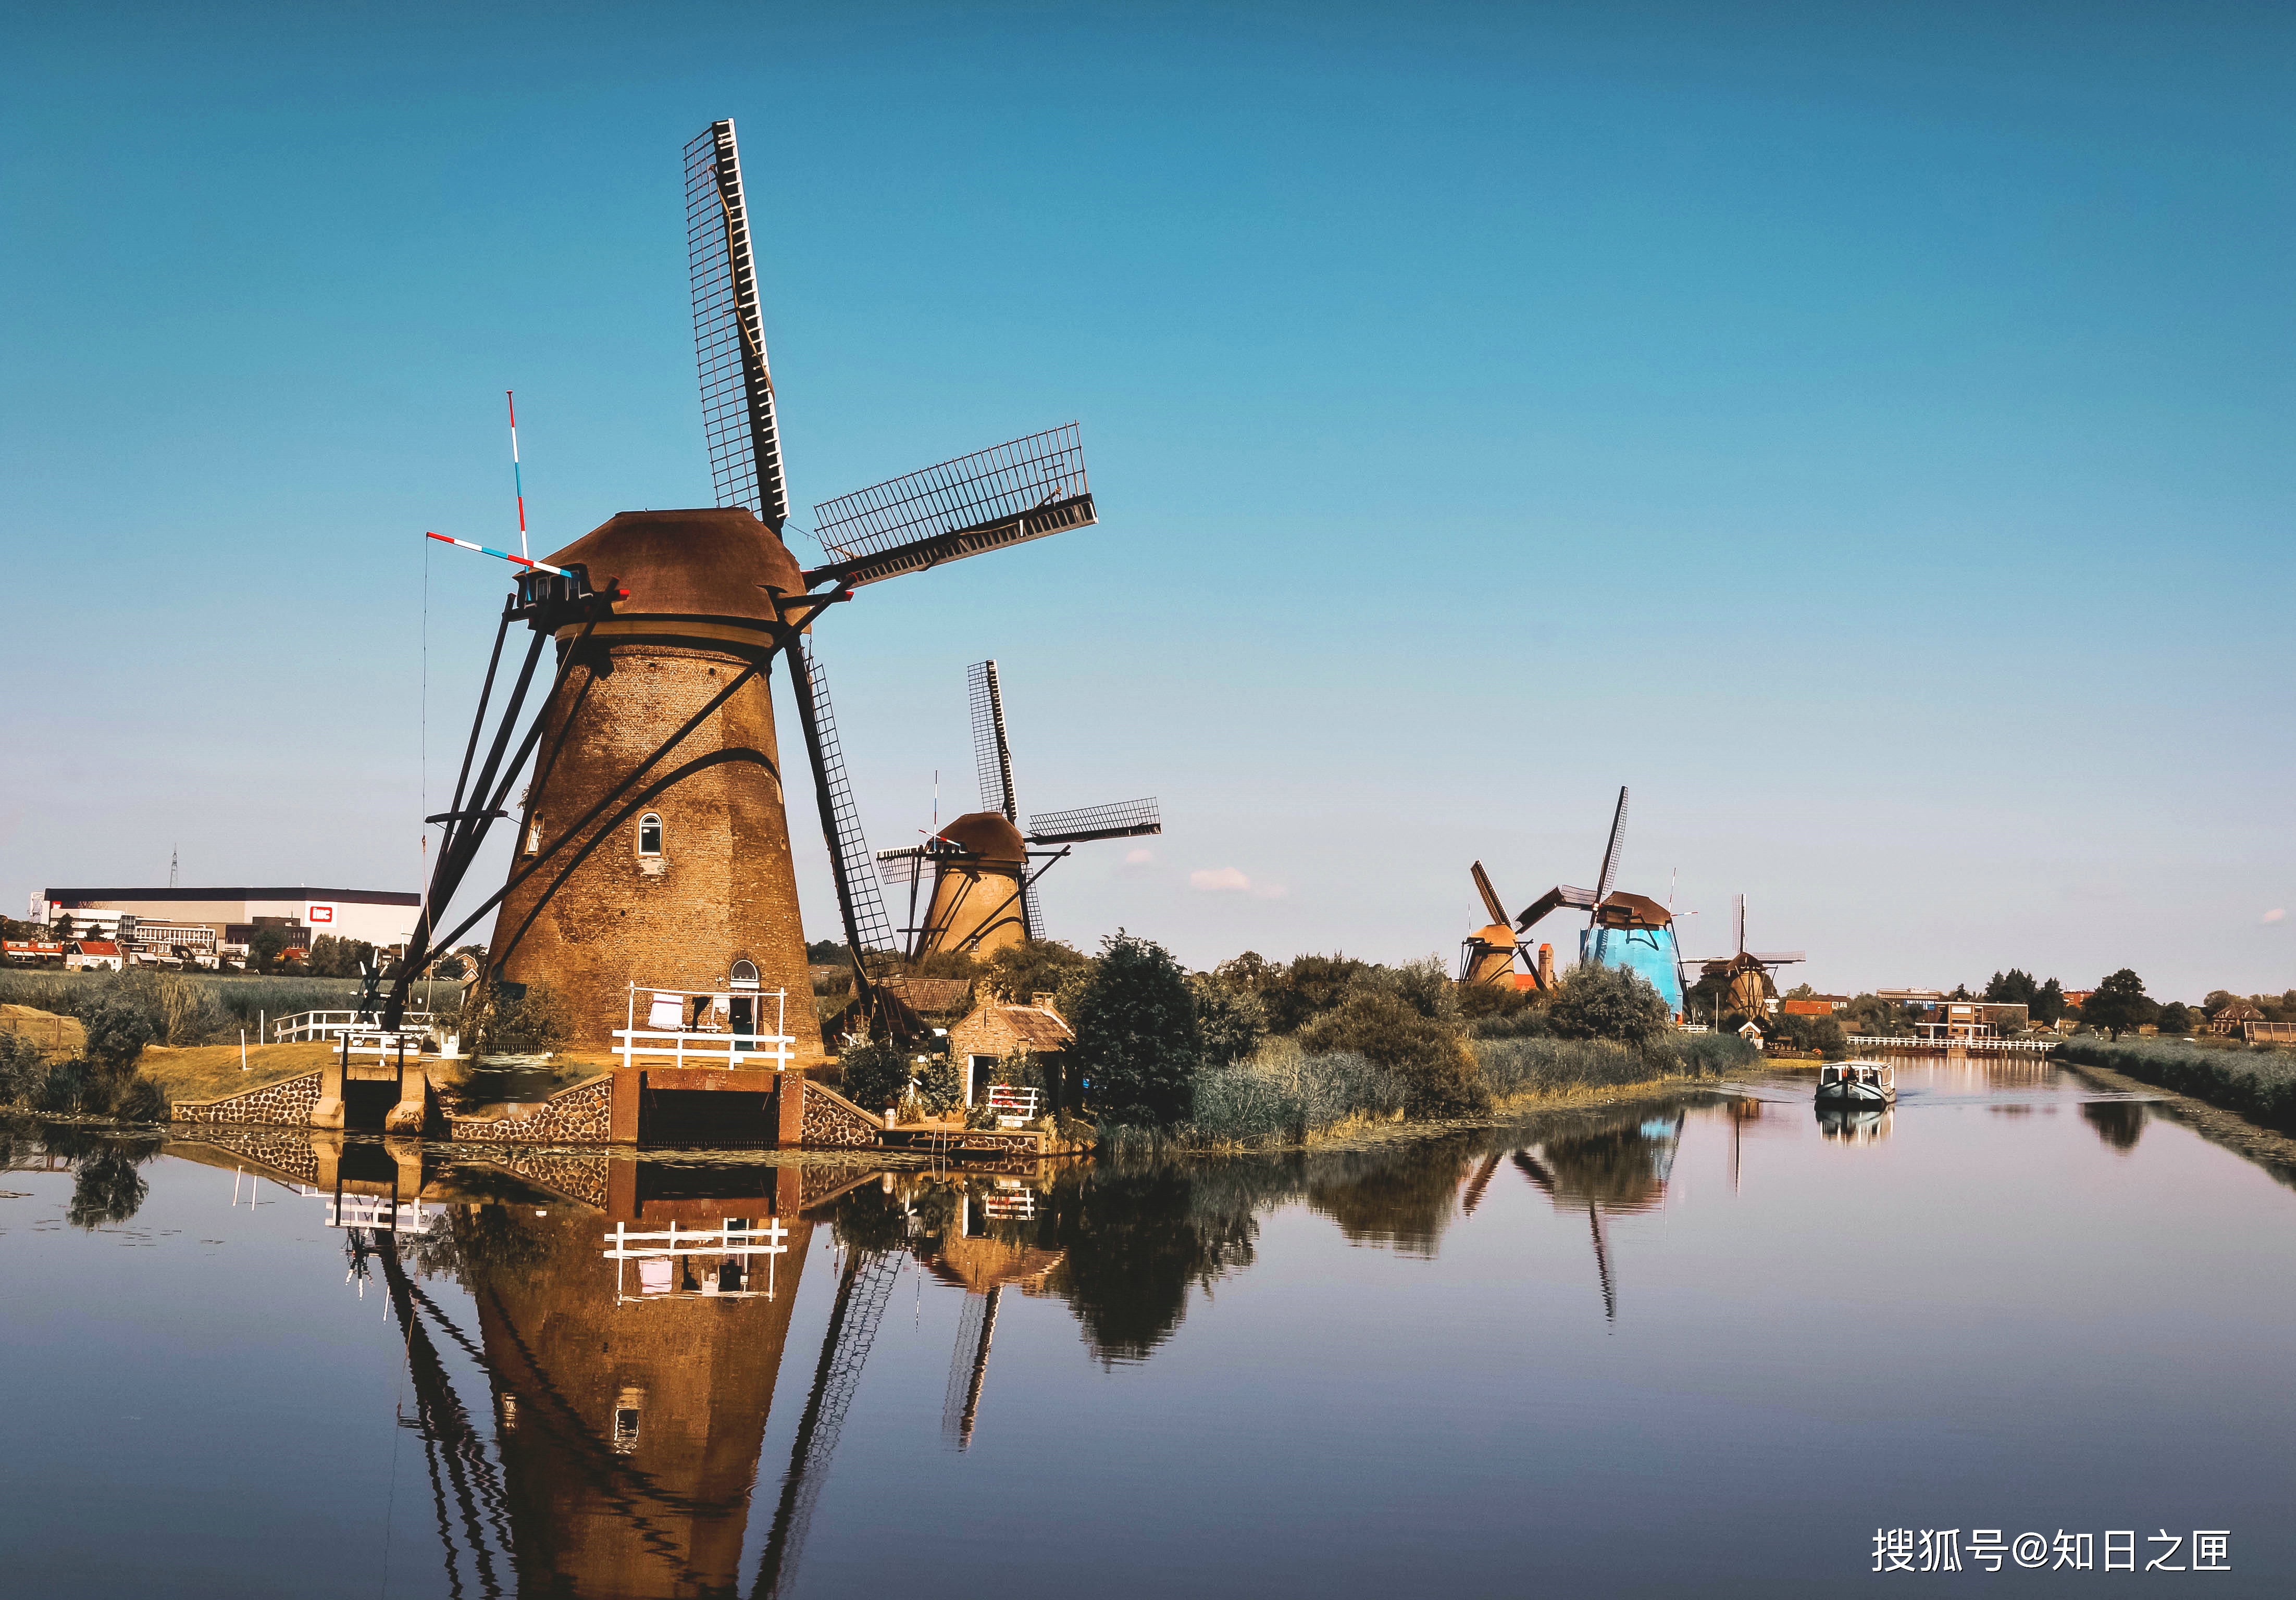 荷兰最著名的小孩堤防的风车美景!